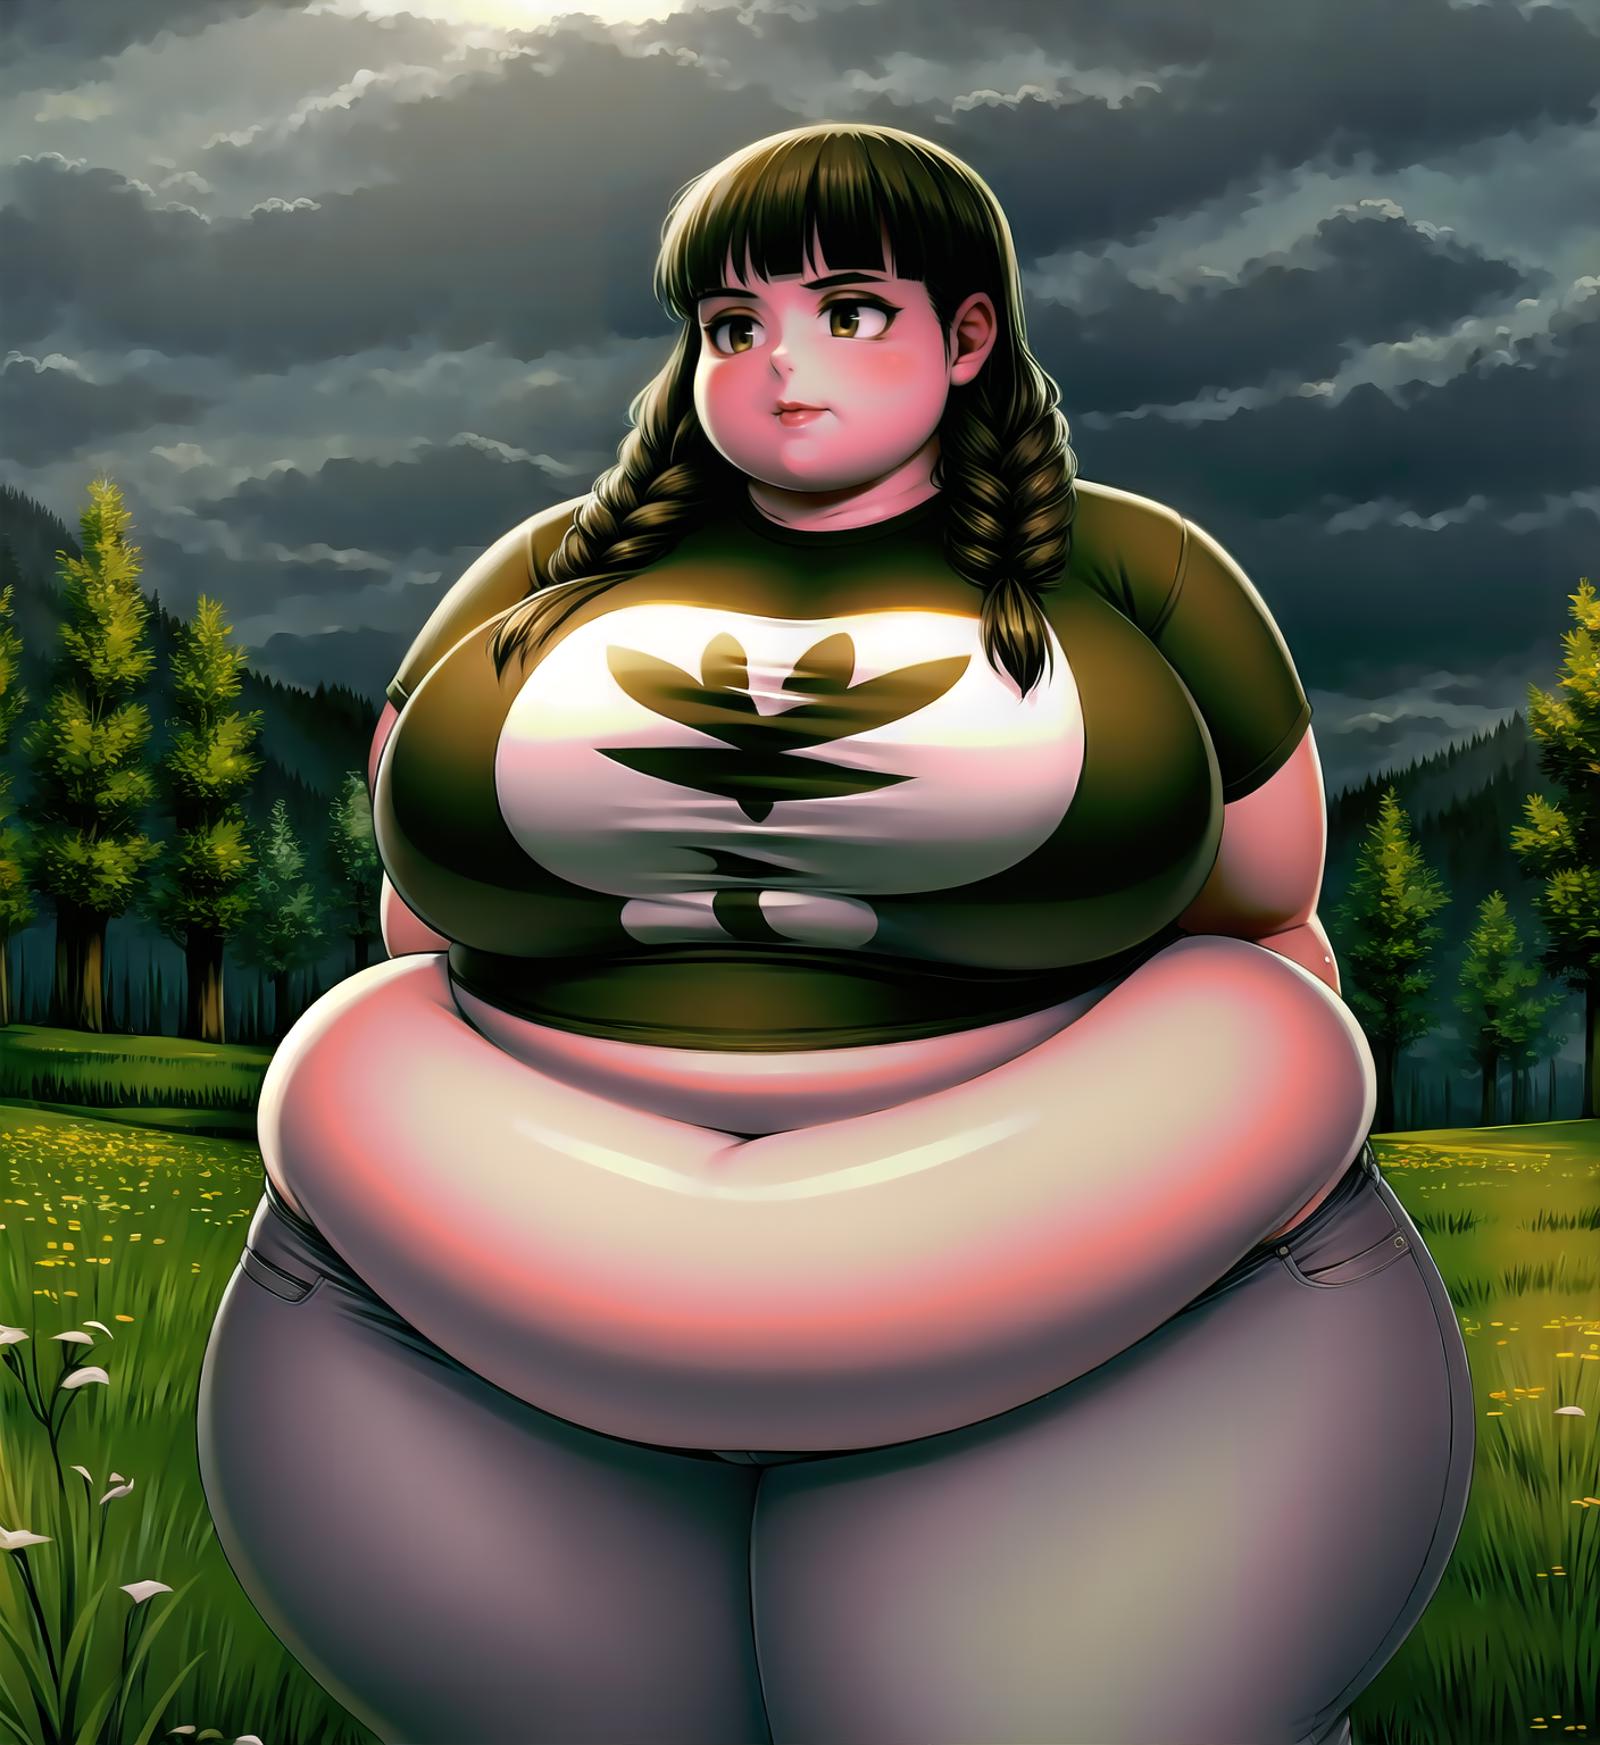 SyModel - Bigger Girls Variant image by darkforces2